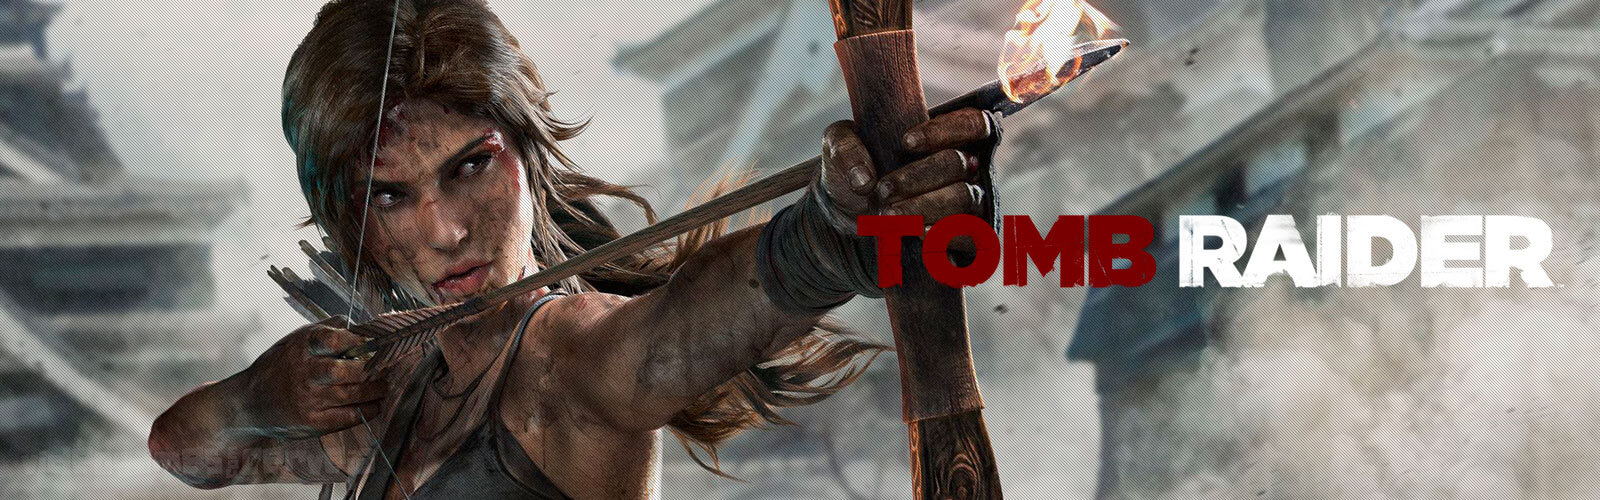 Nostalgia Games: Análise - Tomb Raider 2013 - Xbox 360 